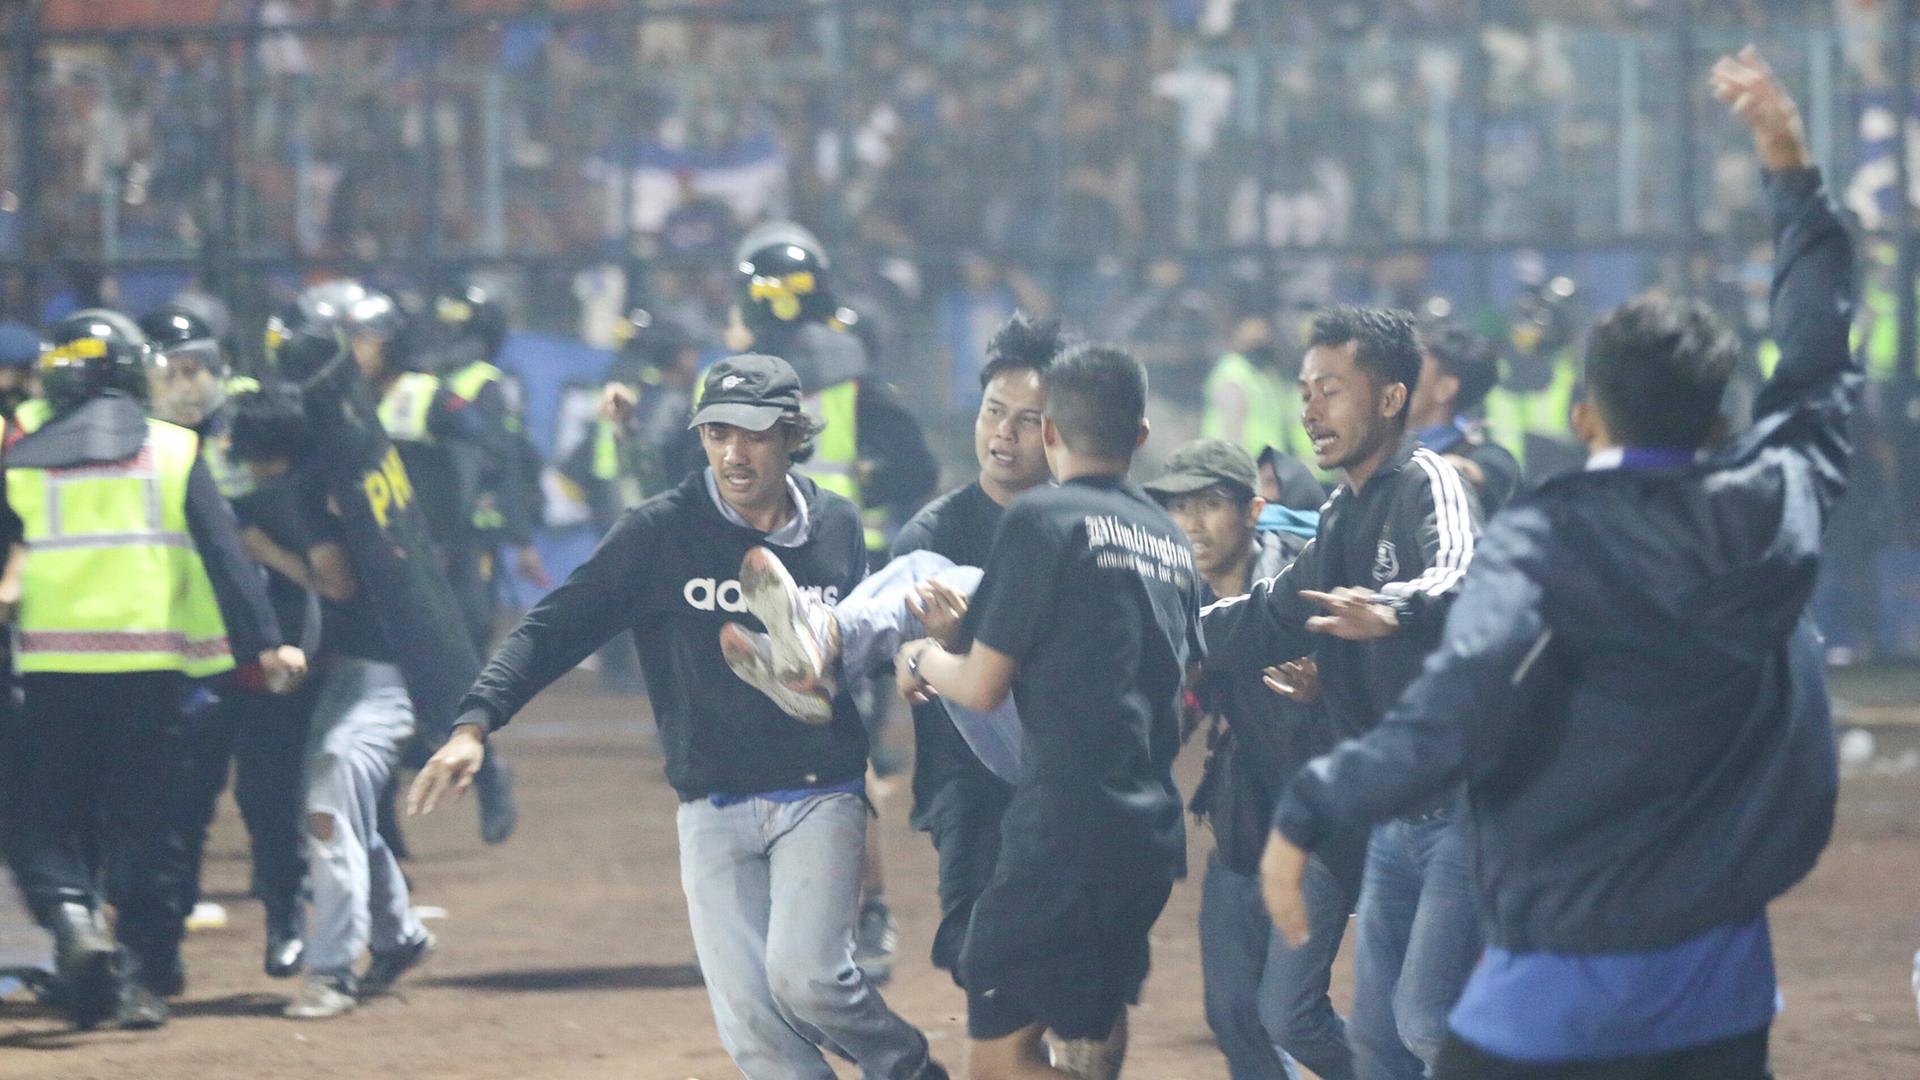 Indonesien - Regierung fordert Bestrafung für Verantwortliche von Stadionkatastrophe